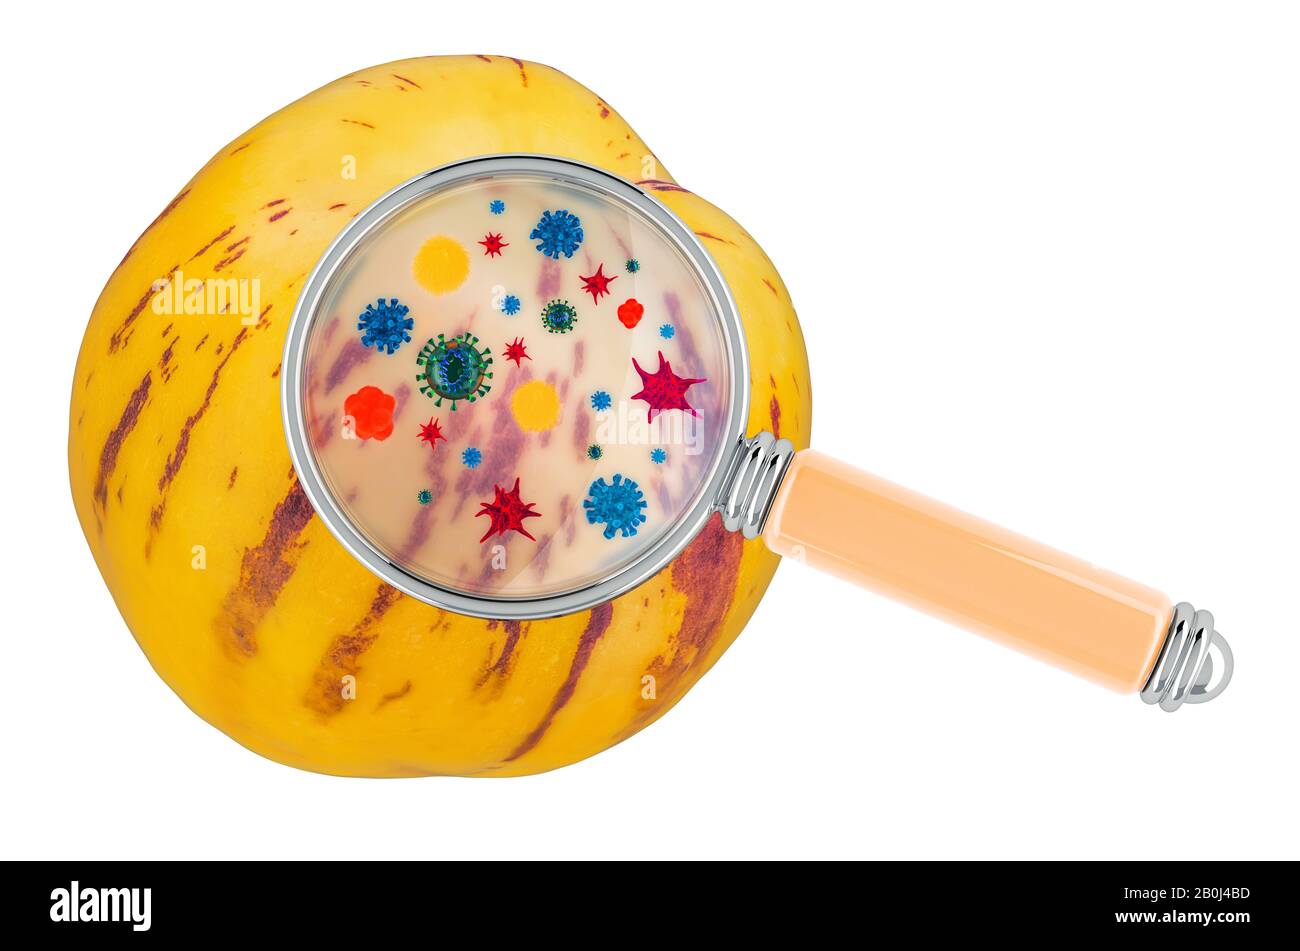 Pepino avec germes, microbes ou virus sous loupe, rendu tridimensionnel isolé sur fond blanc Banque D'Images